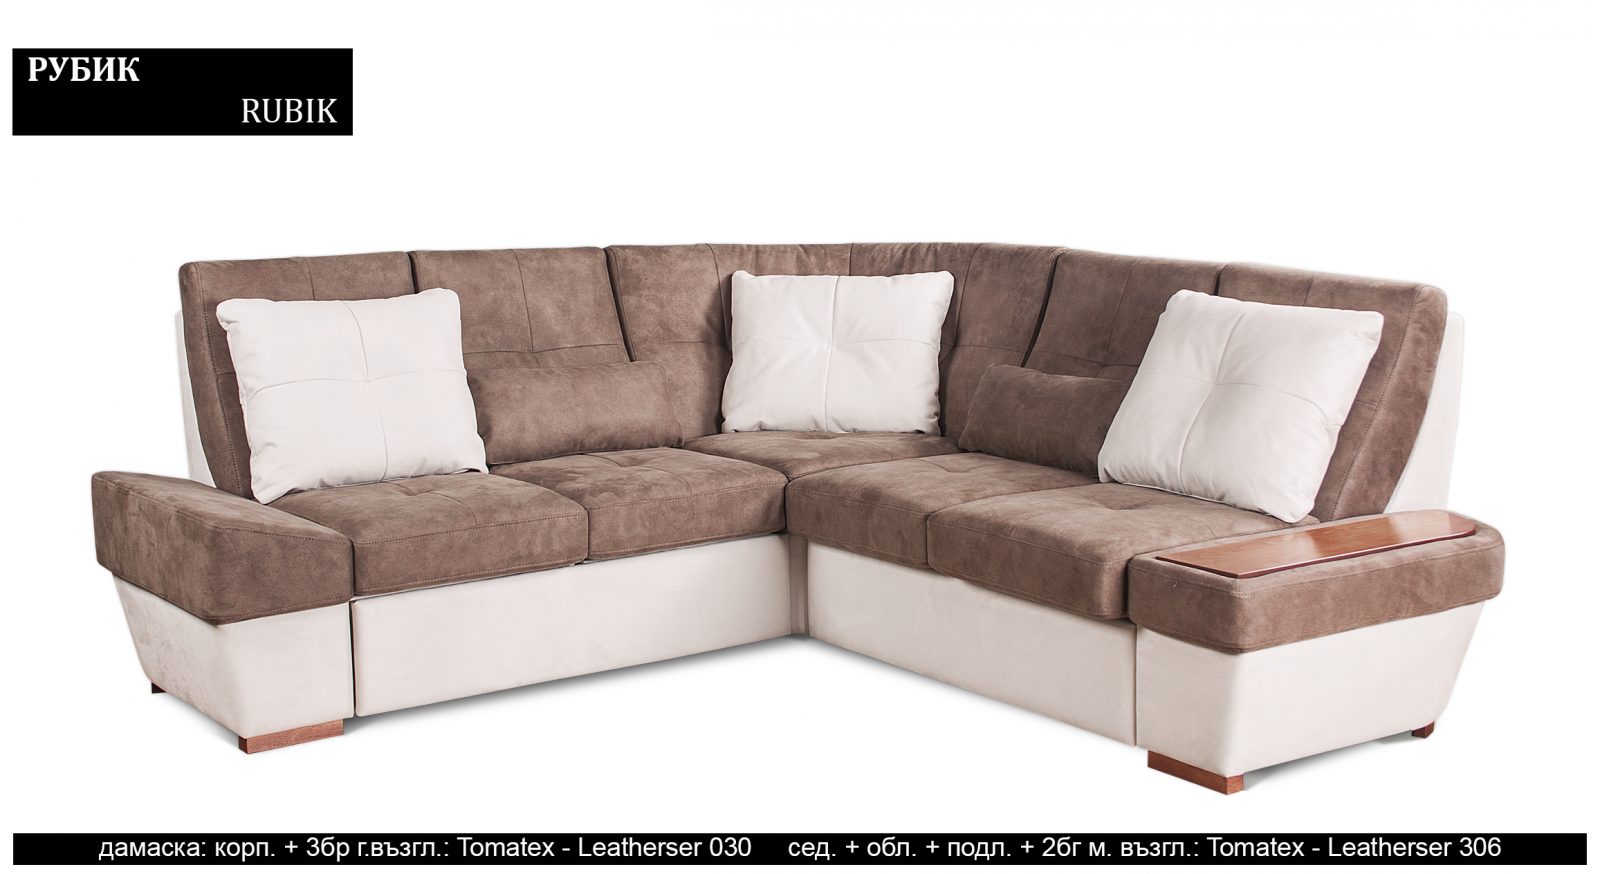 (Български) Разтегателен луксозен диван |»РУБИК»| Руди-Ан